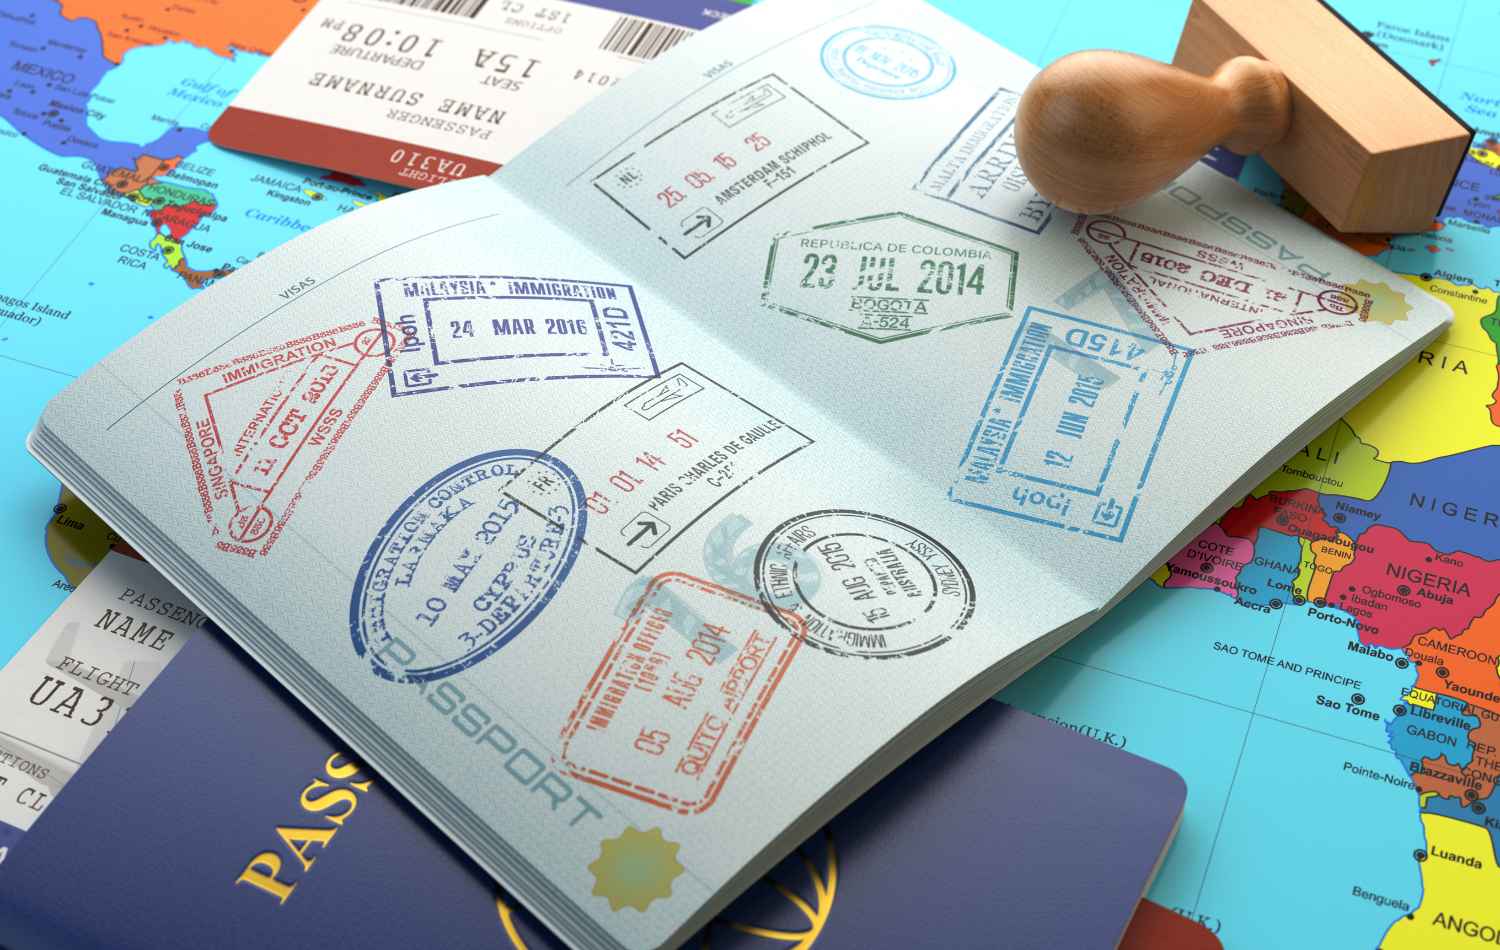 מהם היתרונות הסמויים של החזקת דרכון אוסטרי?